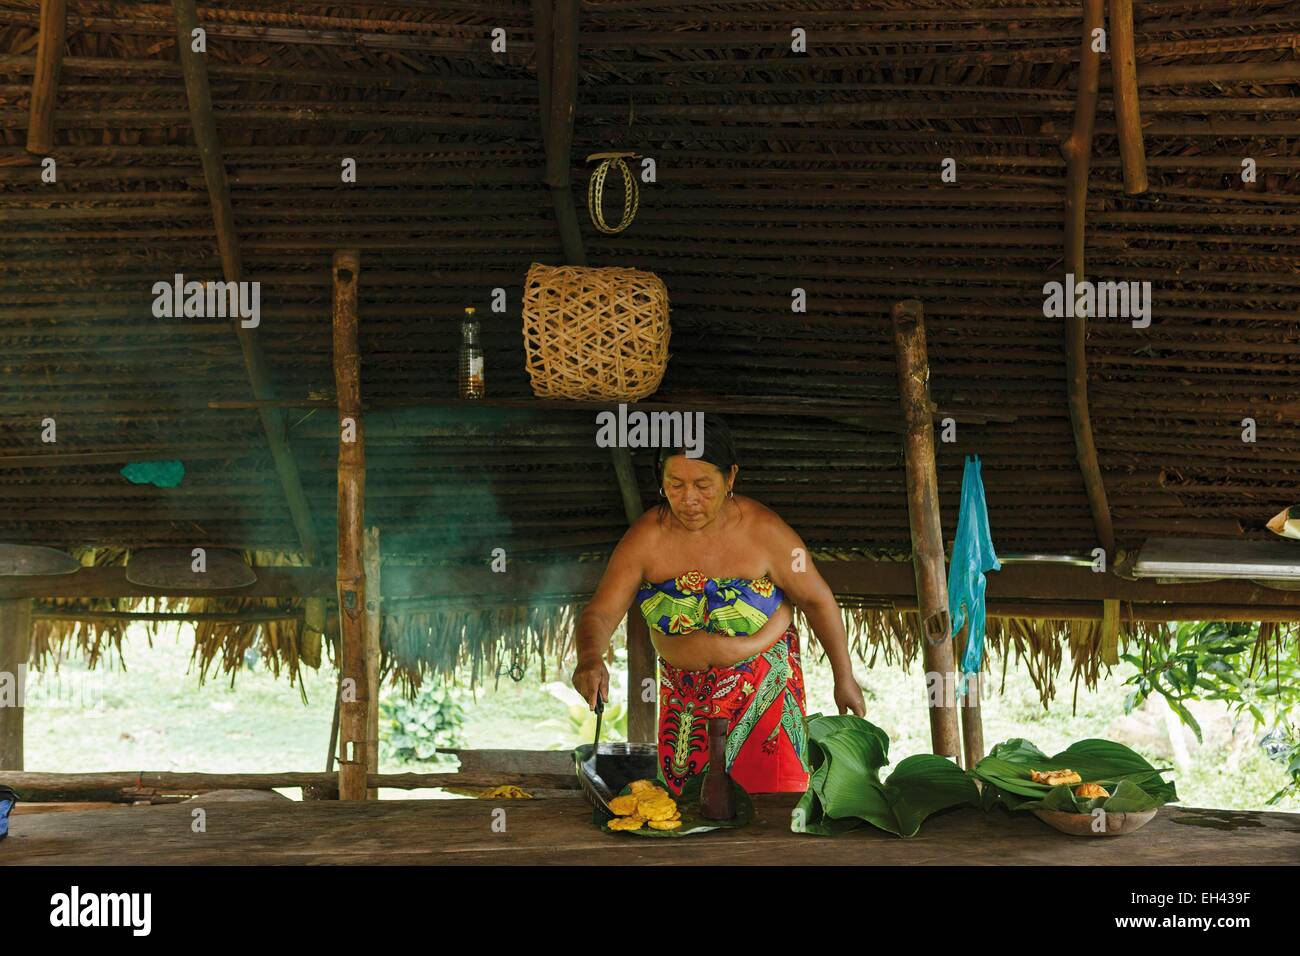 Panama, provincia di Darien, Parco Nazionale del Darién, classificato come patrimonio mondiale dall UNESCO, Embera comunità indigena, ritratto di un indigeno Embera donna, ritratto di un indigeno Embera donna cucinare frittelle di banana Foto Stock